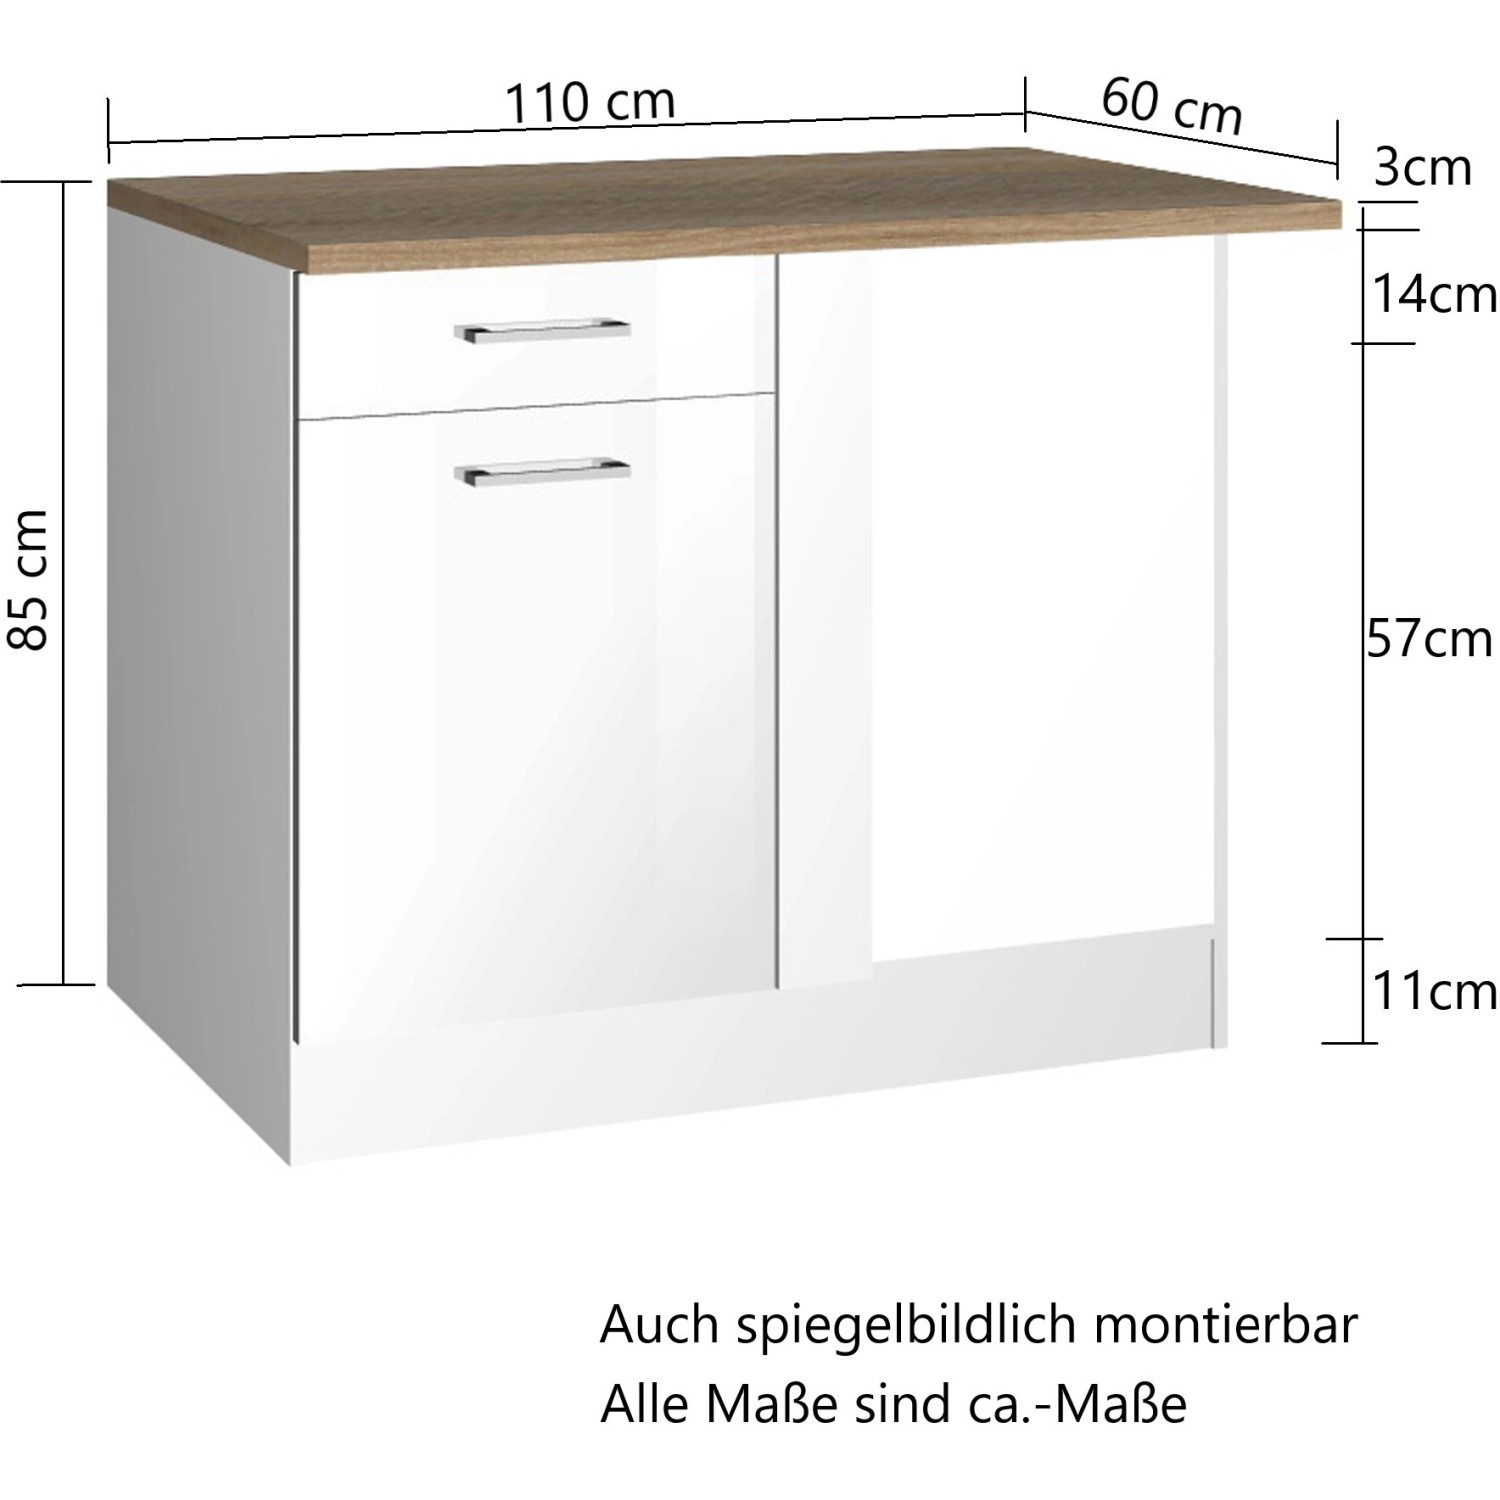 Held Möbel Küchen-Eckschrank Mailand 110 Hochglanz Weiß/Weiß kaufen bei OBI cm